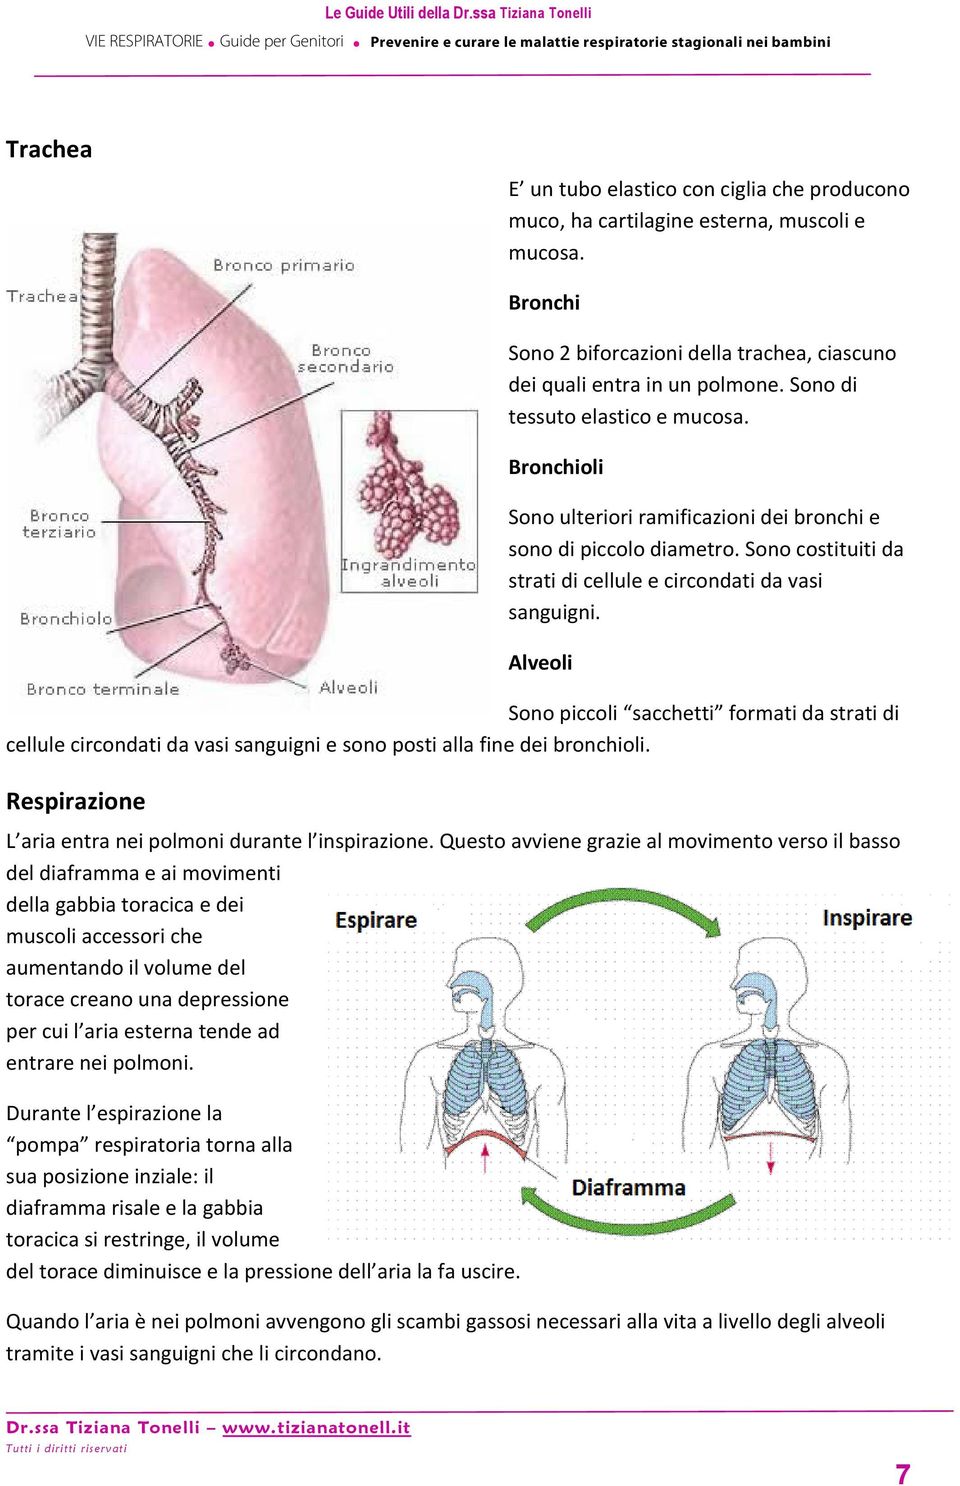 Bronchi Sono 2 biforcazioni della trachea, ciascuno dei quali entra in un polmone. Sono di tessuto elastico e mucosa. Bronchioli Sono ulteriori ramificazioni dei bronchi e sono di piccolo diametro.